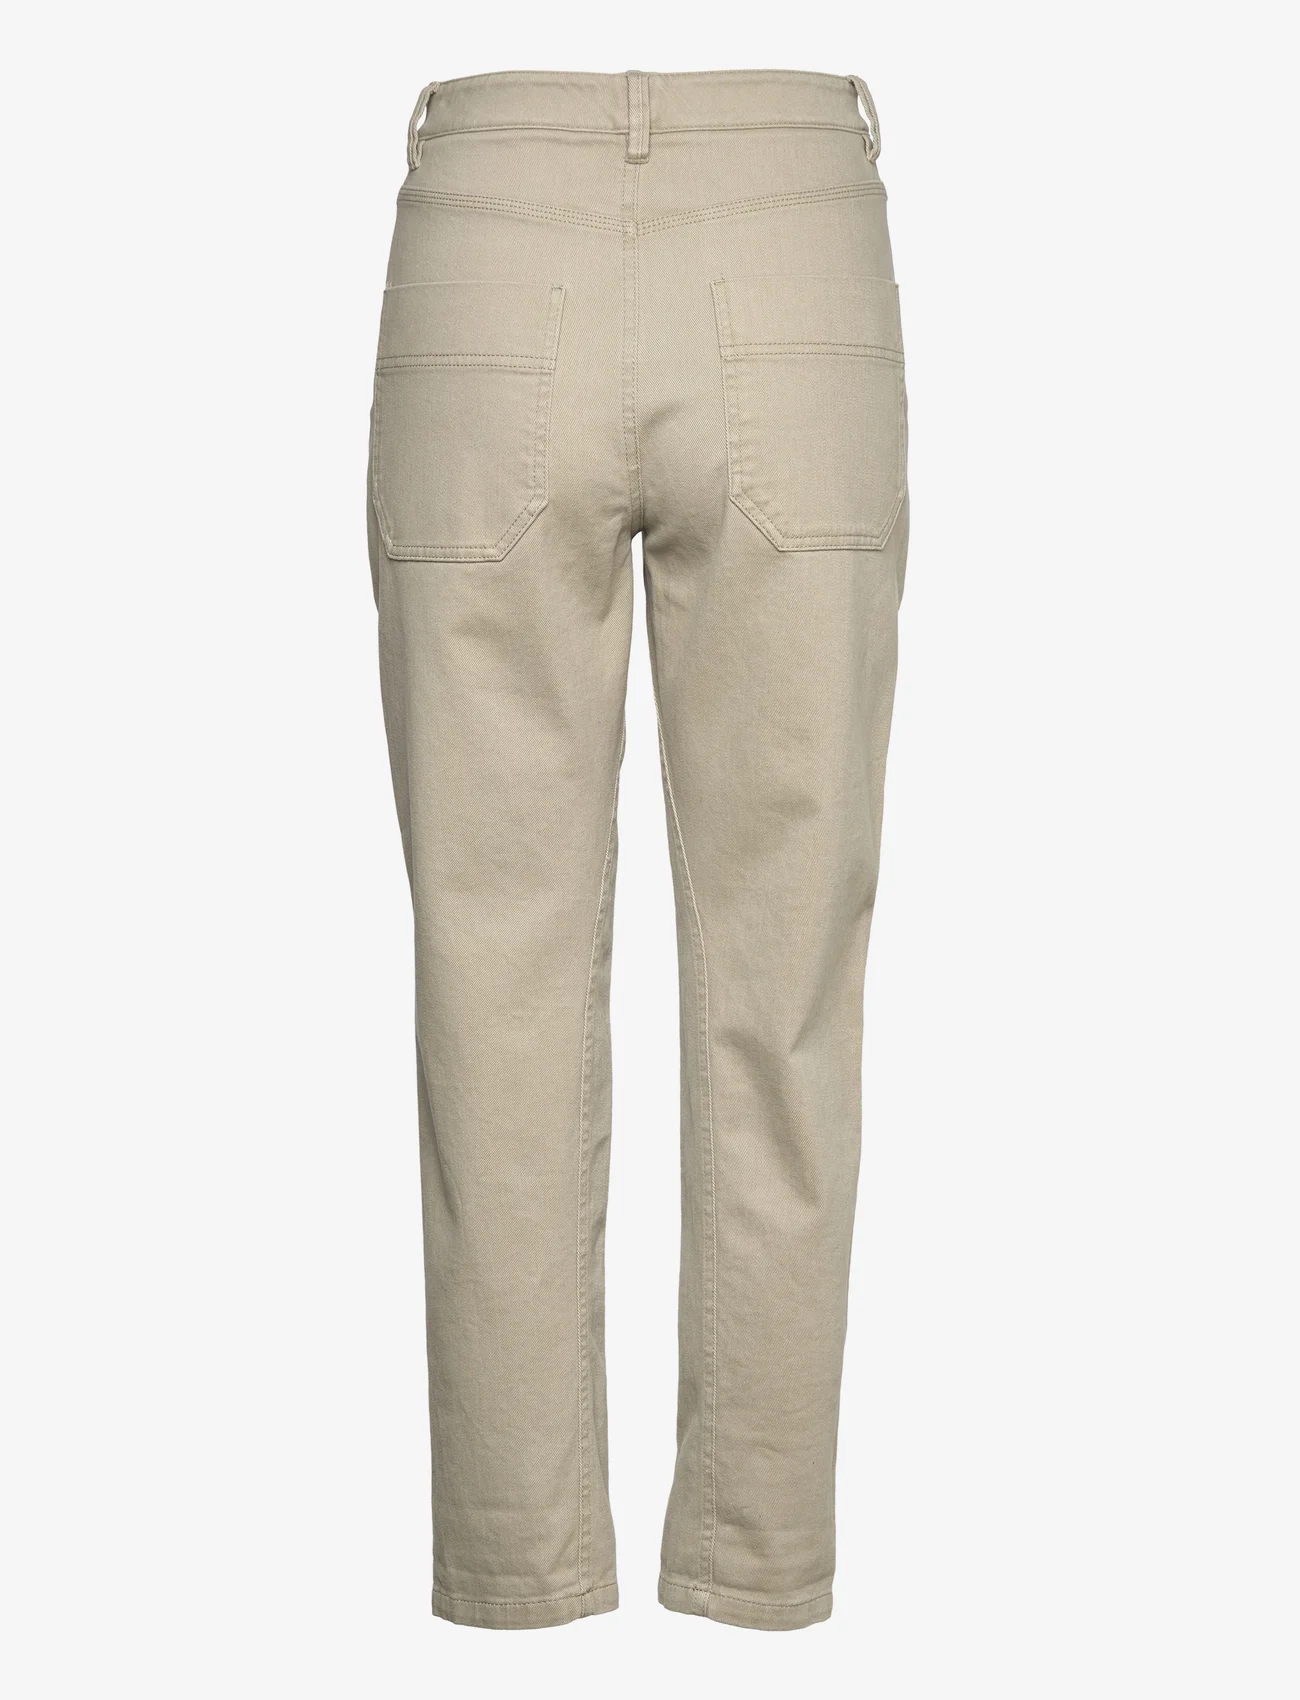 Reiss - ERIN - bukser med lige ben - khaki - 1